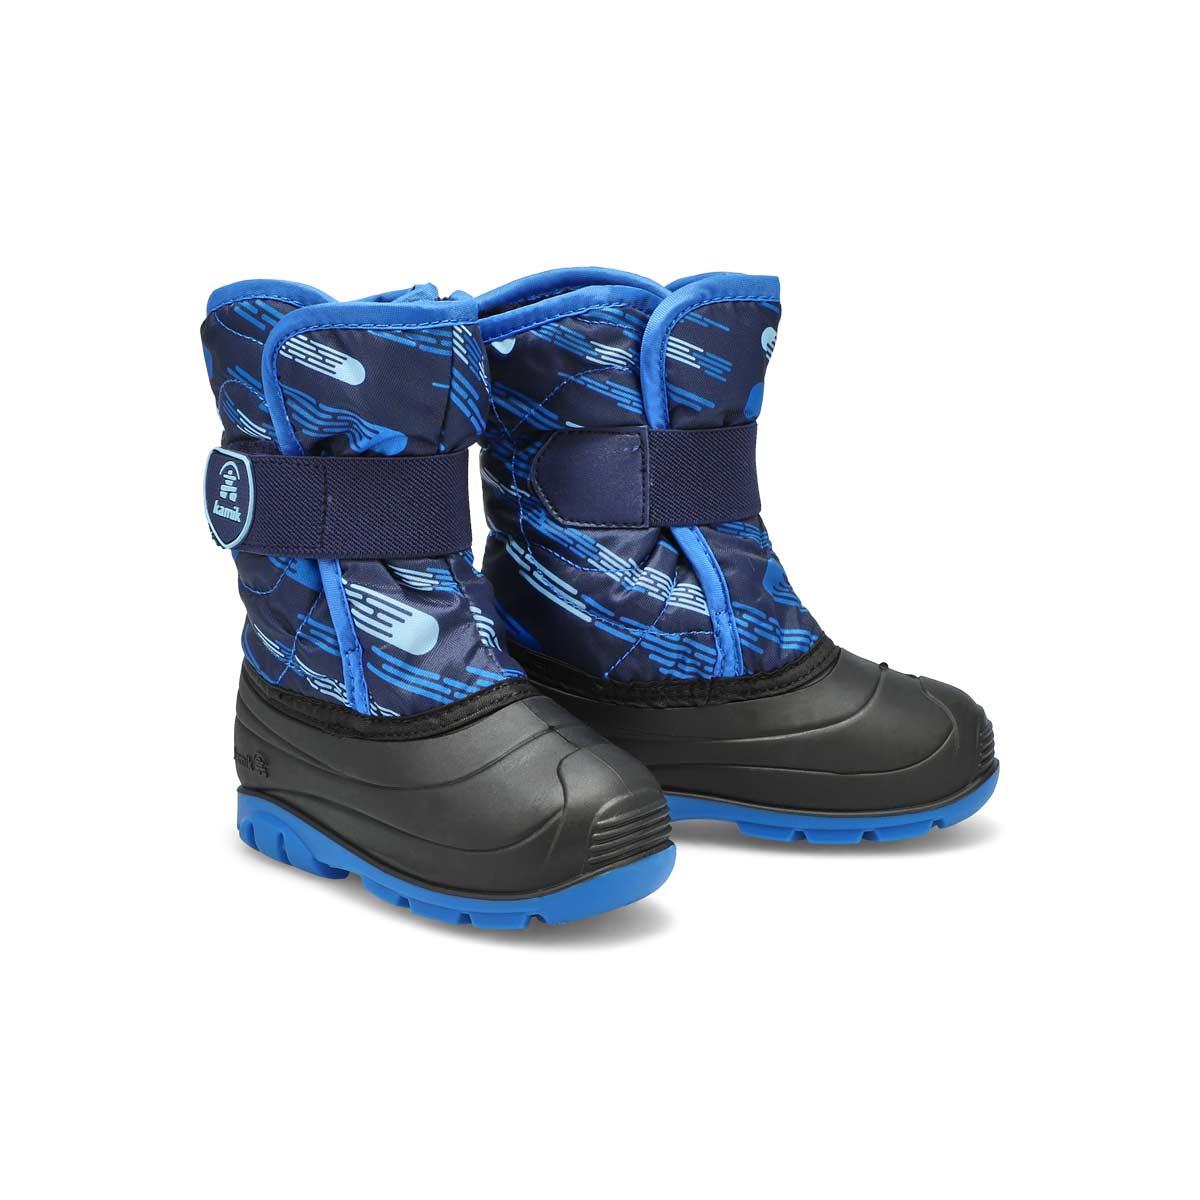 Infants' Snowbug4 Waterproof Winter Boot - Navy